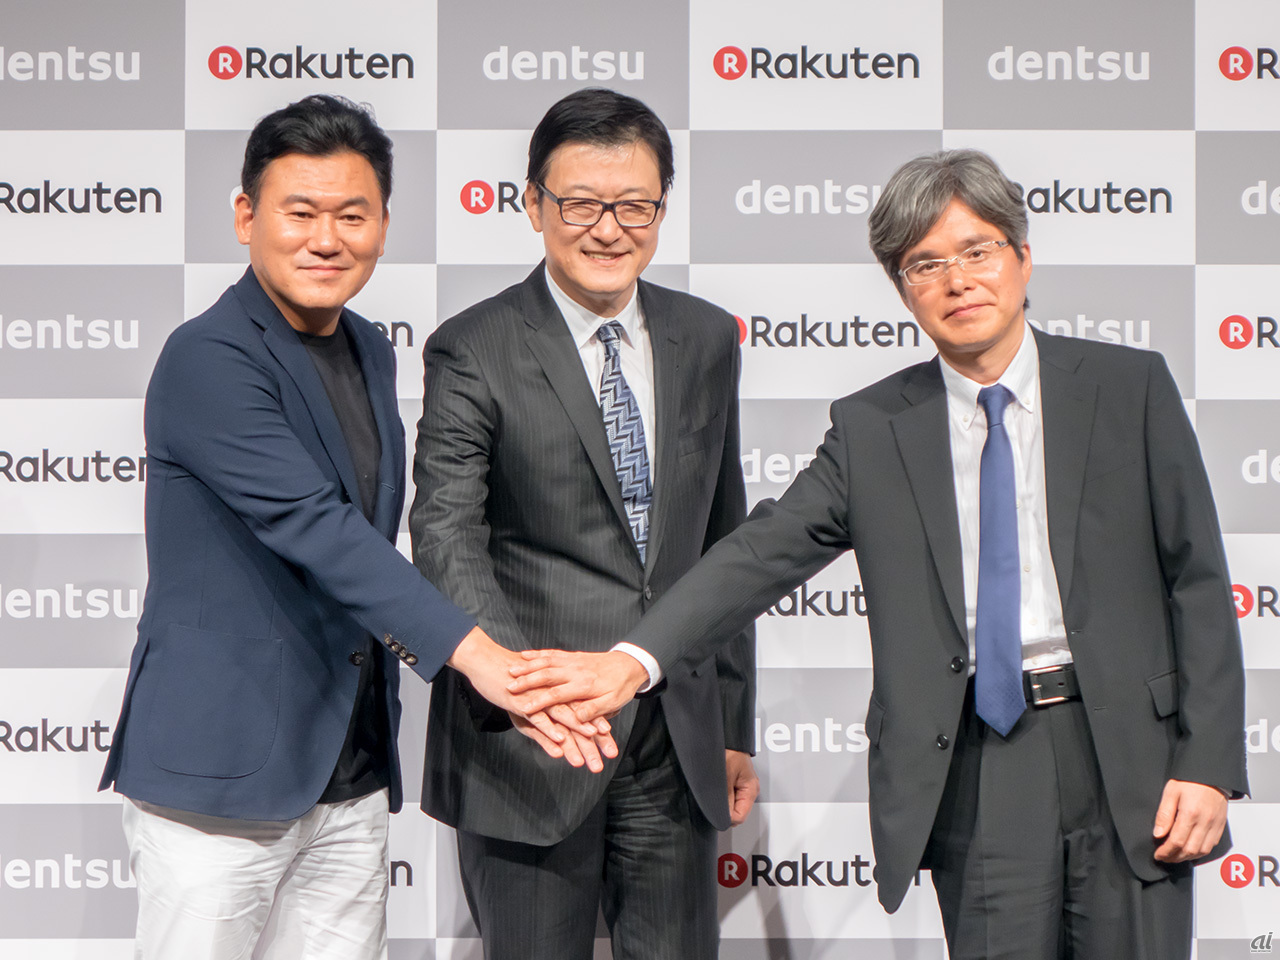 楽天と電通 共同で楽天データマーケティング設立 9000万人の顧客基盤を活用 Cnet Japan